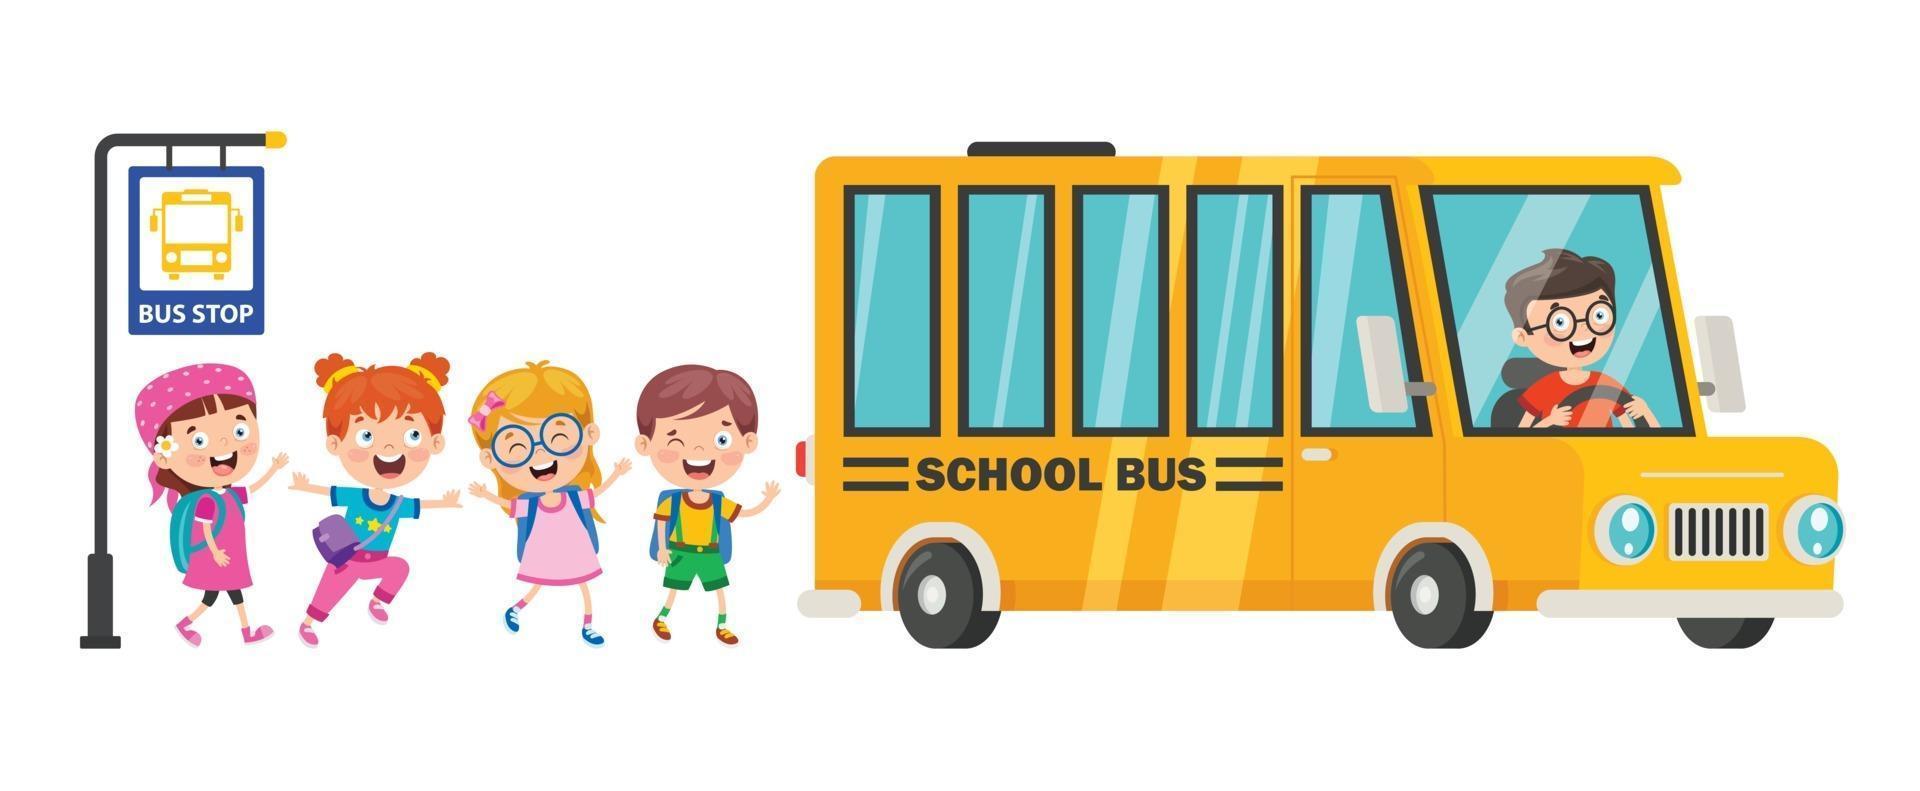 bambini felici e scuolabus vettore